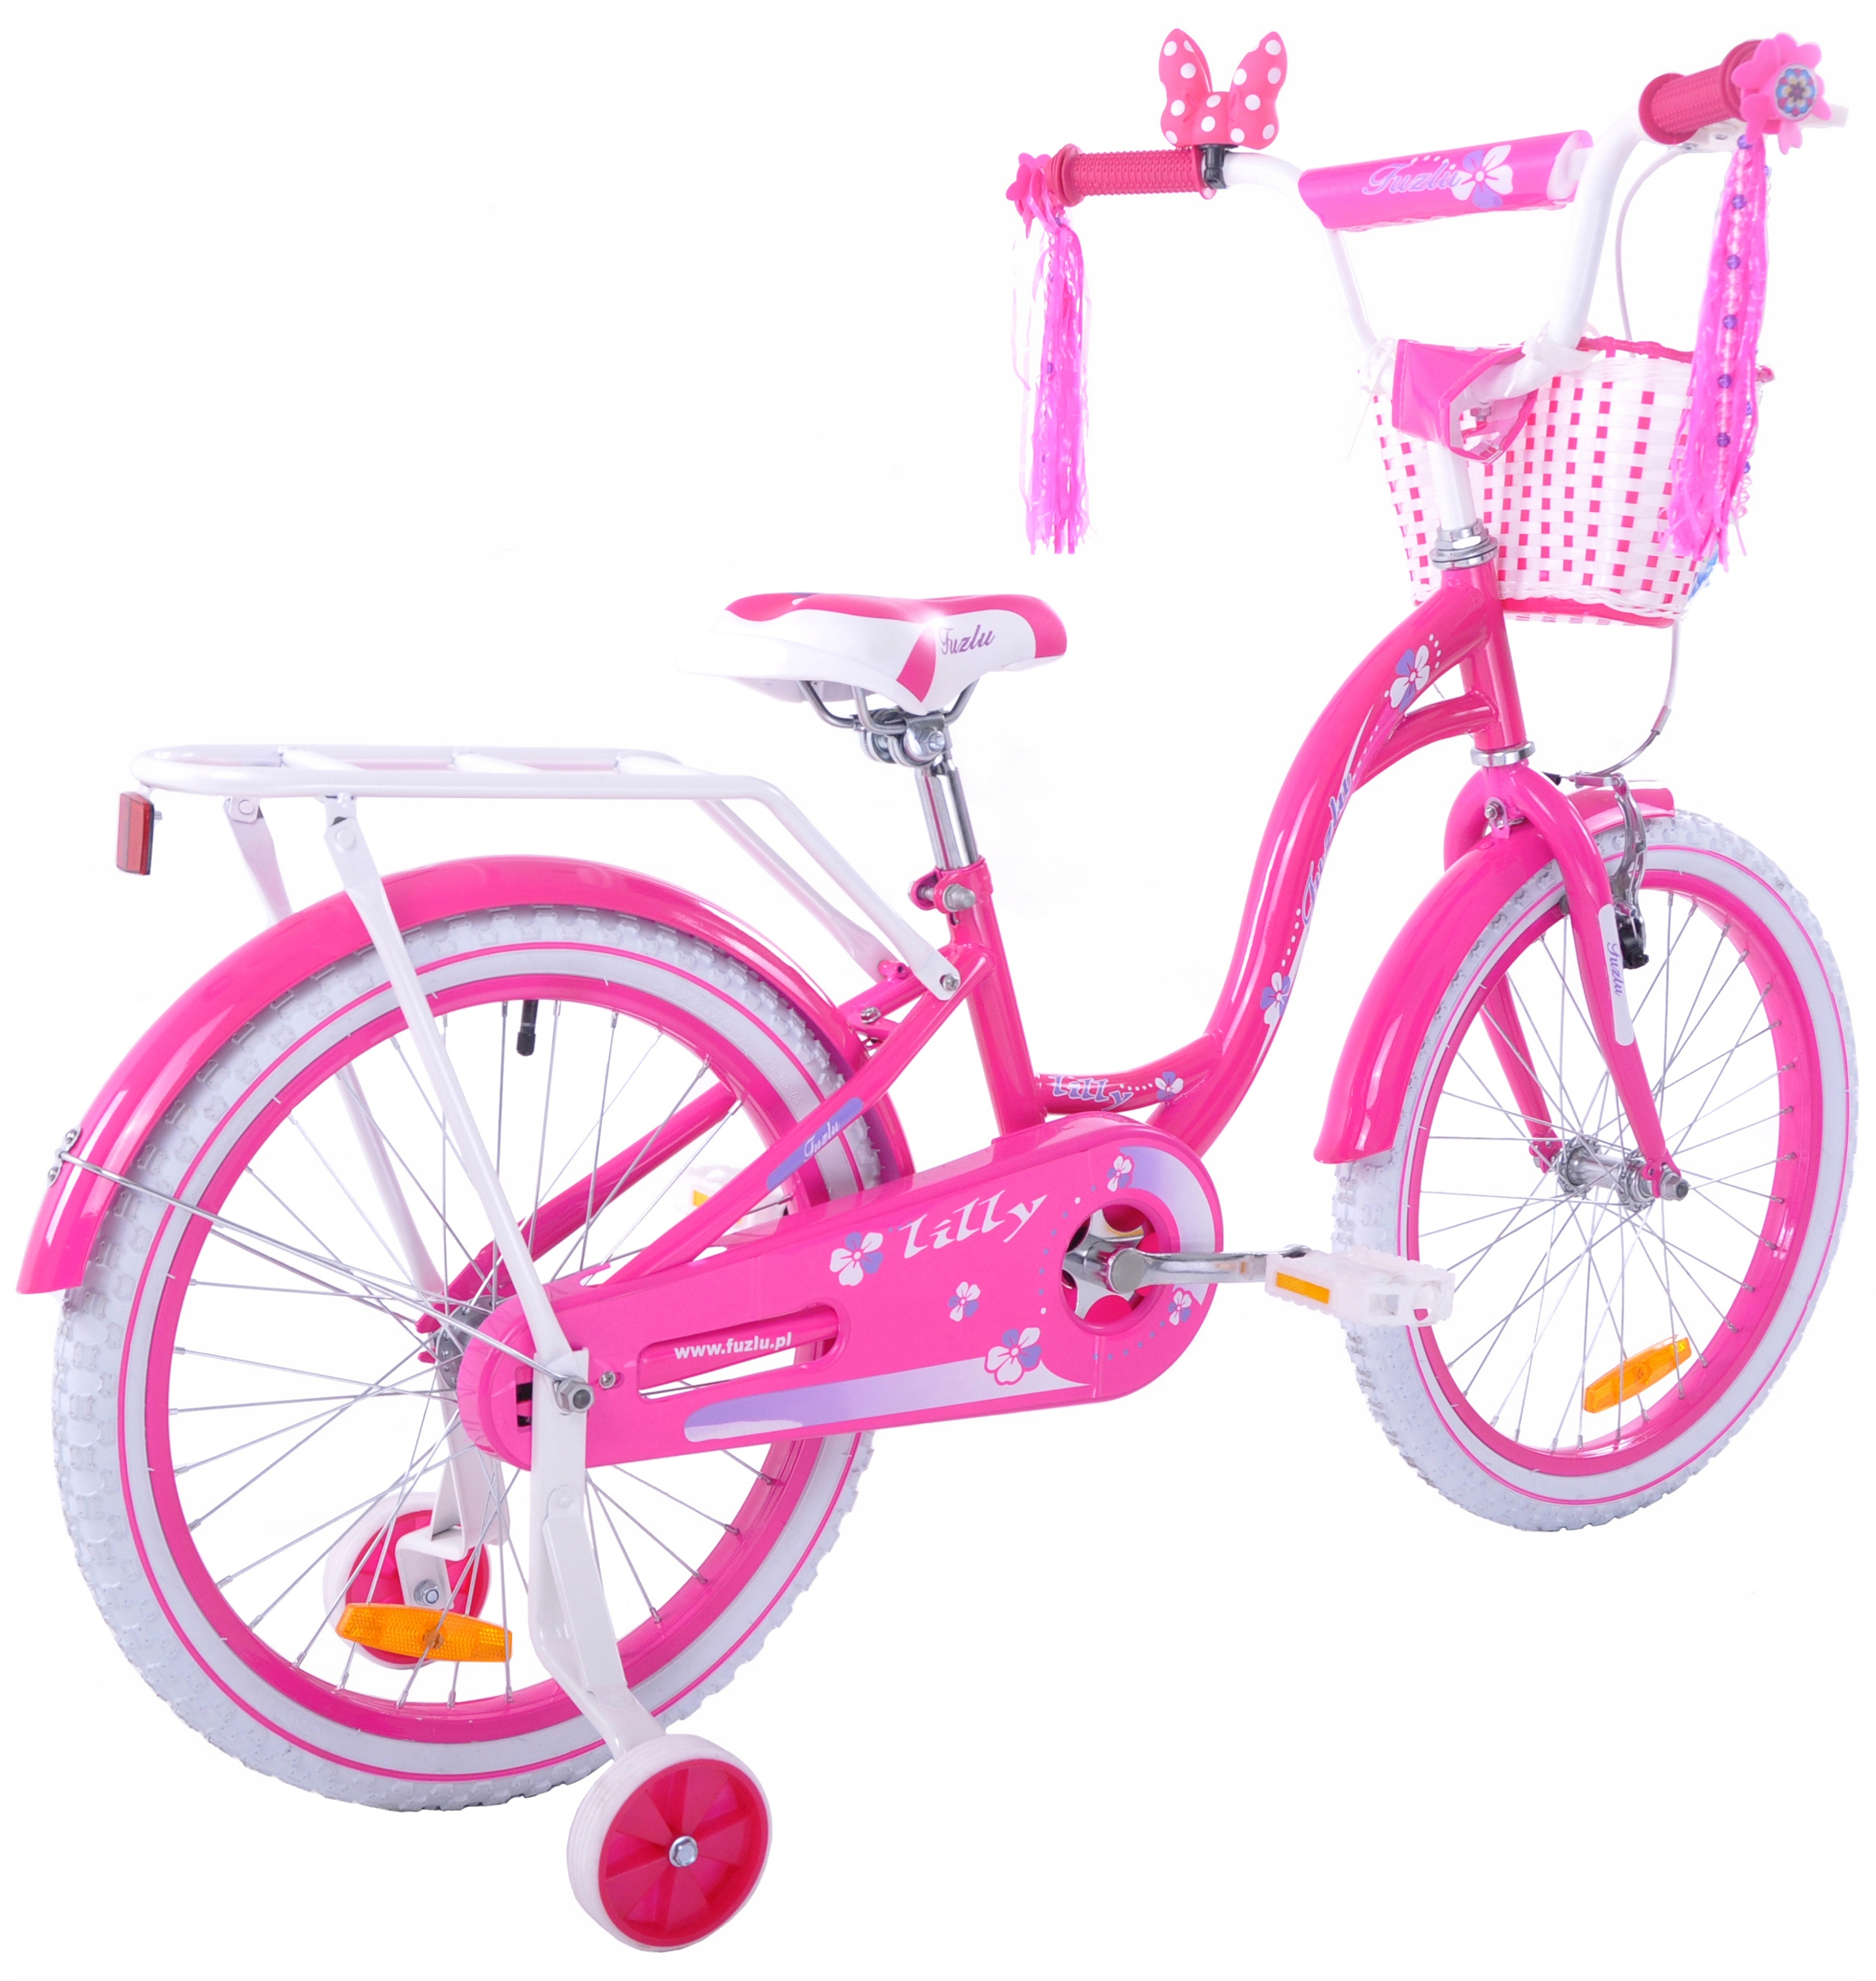 Какой велосипед купить ребенку 7 лет. Велосипед для девочки. Велосипед для девочки 7 лет. Велосипед розовый для девочки 5 лет. Велосипед для девочки 8 лет.